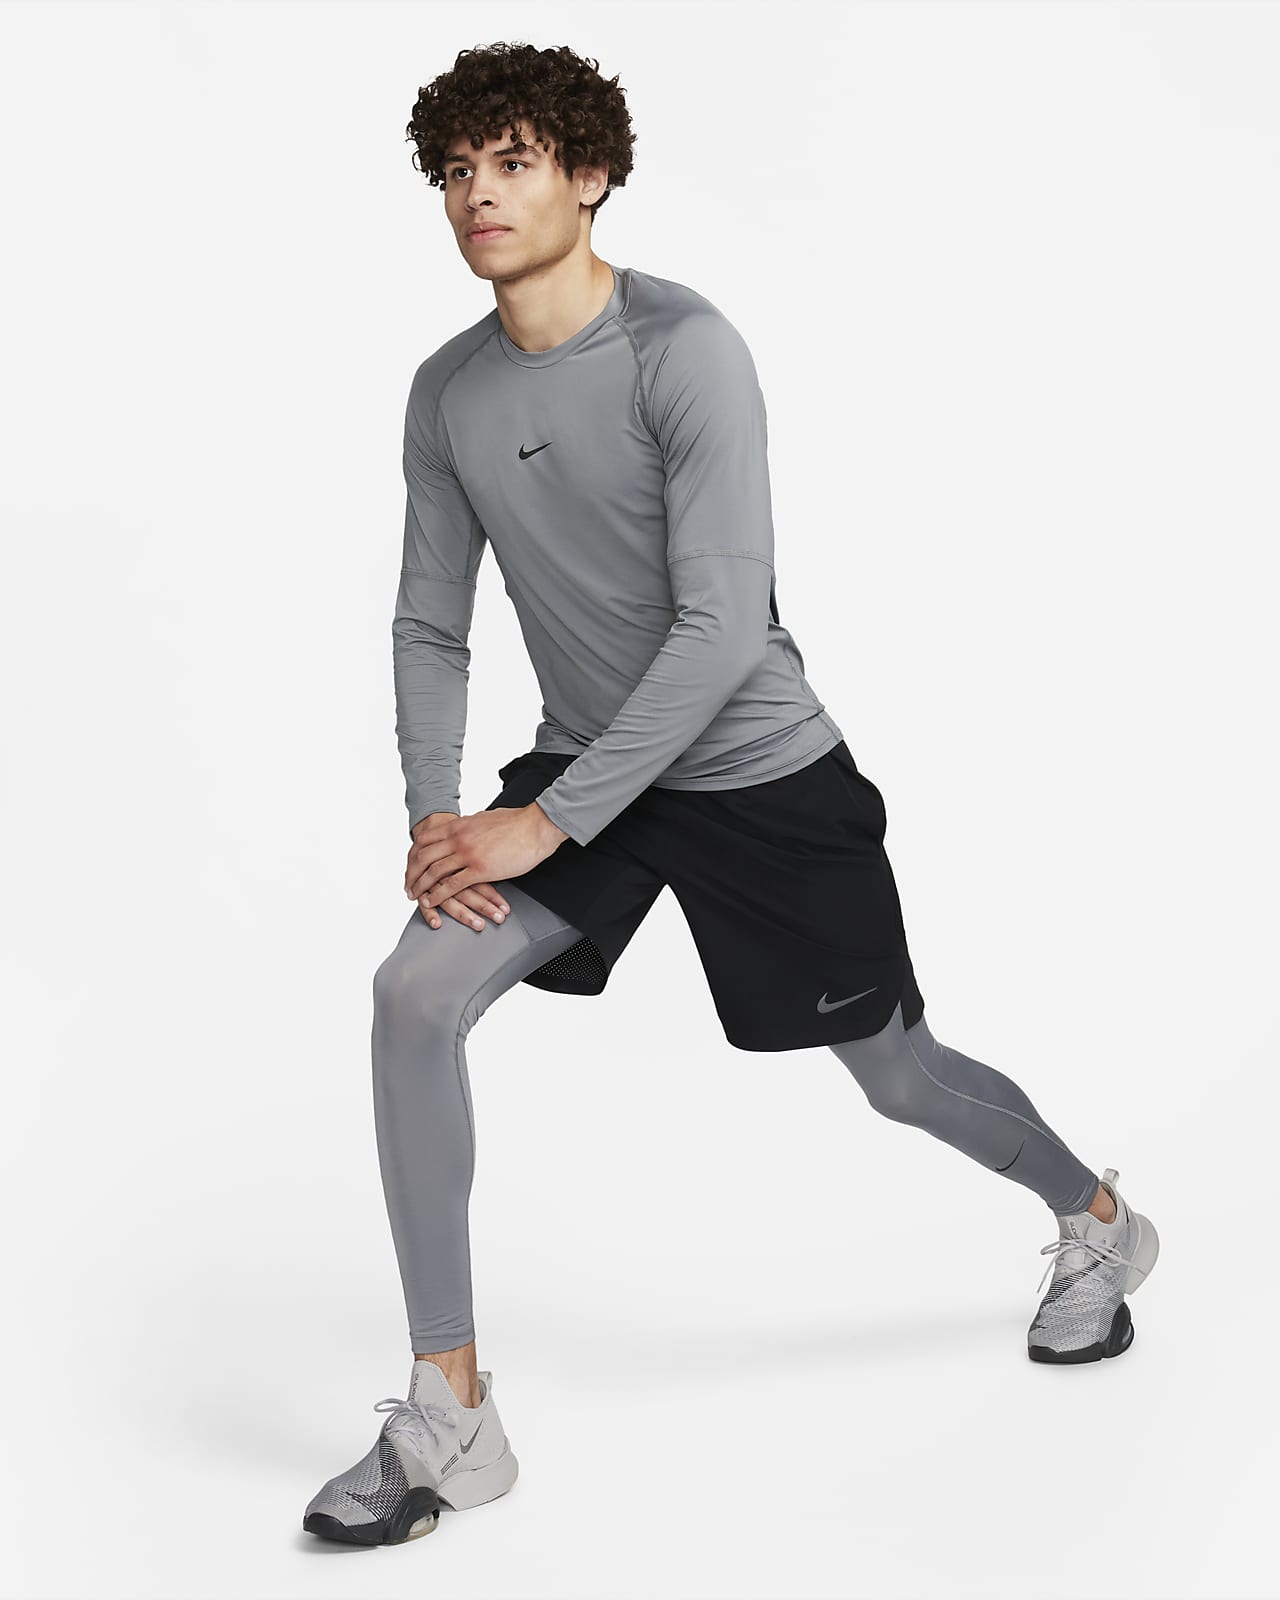 Nike Pro Long Shorts Black/White Dri Fit Workout Gym Men's